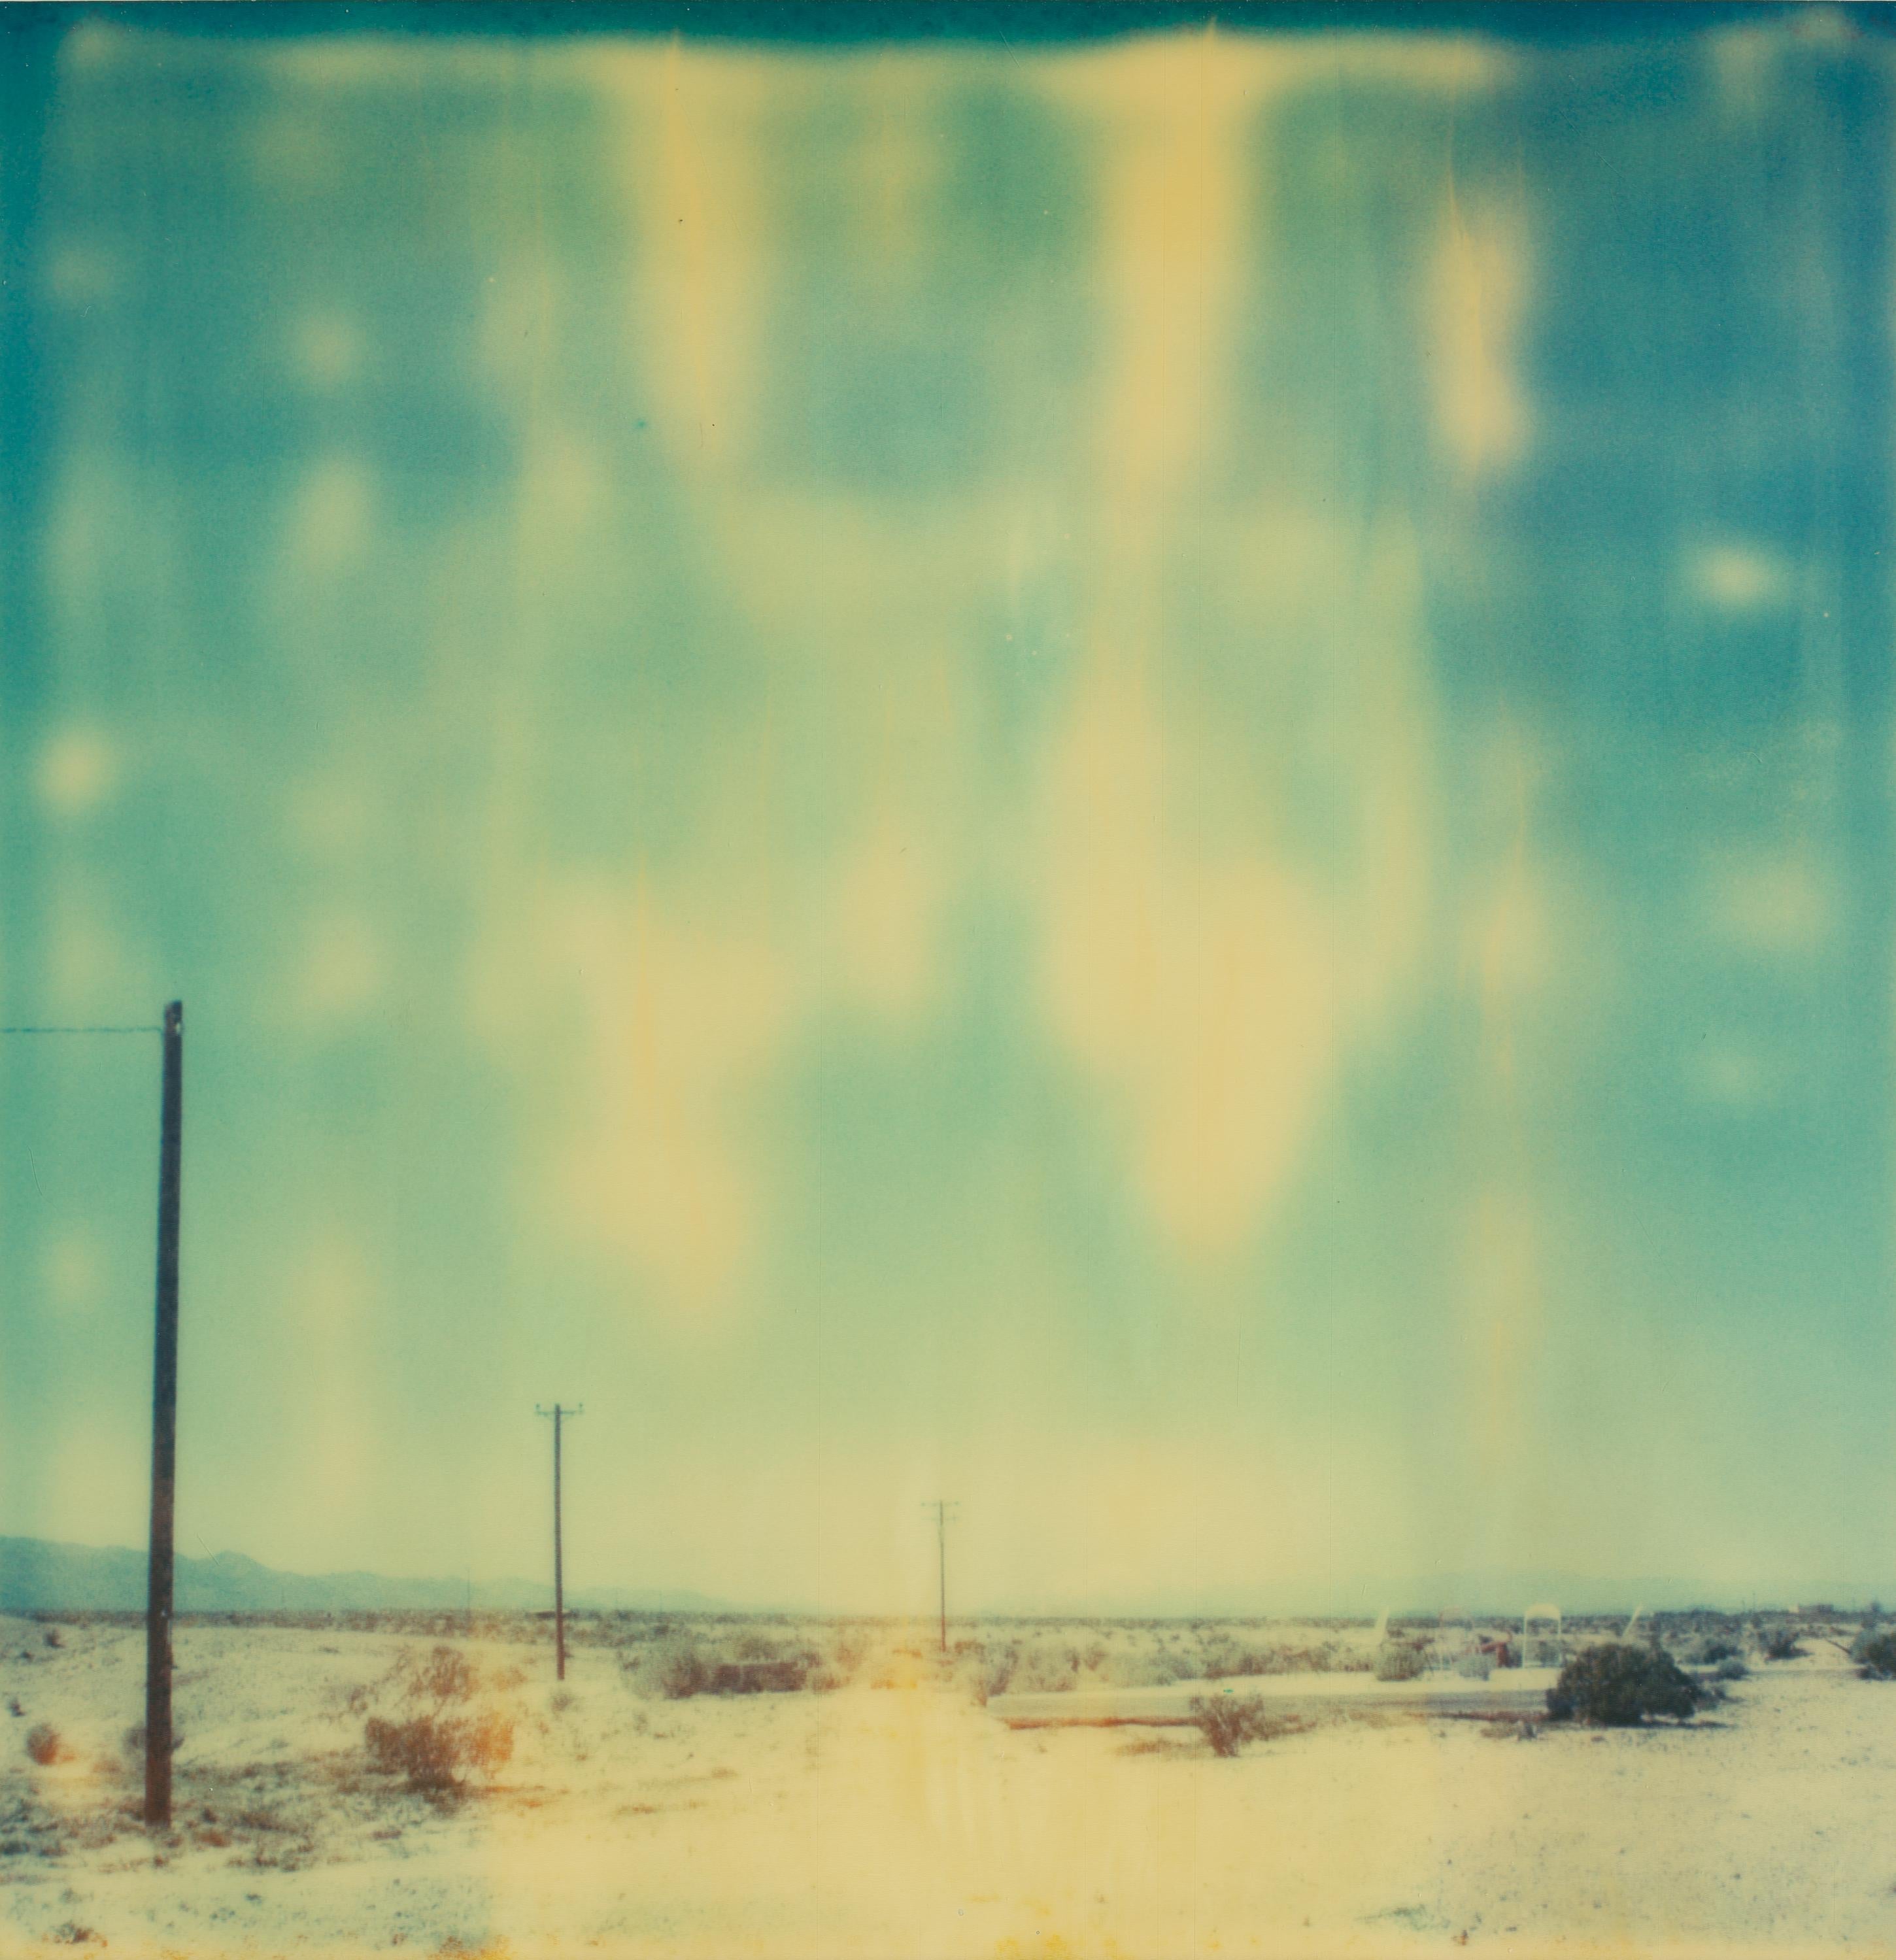 Stefanie Schneider Landscape Photograph - Blurry and Hot - Sidewinder